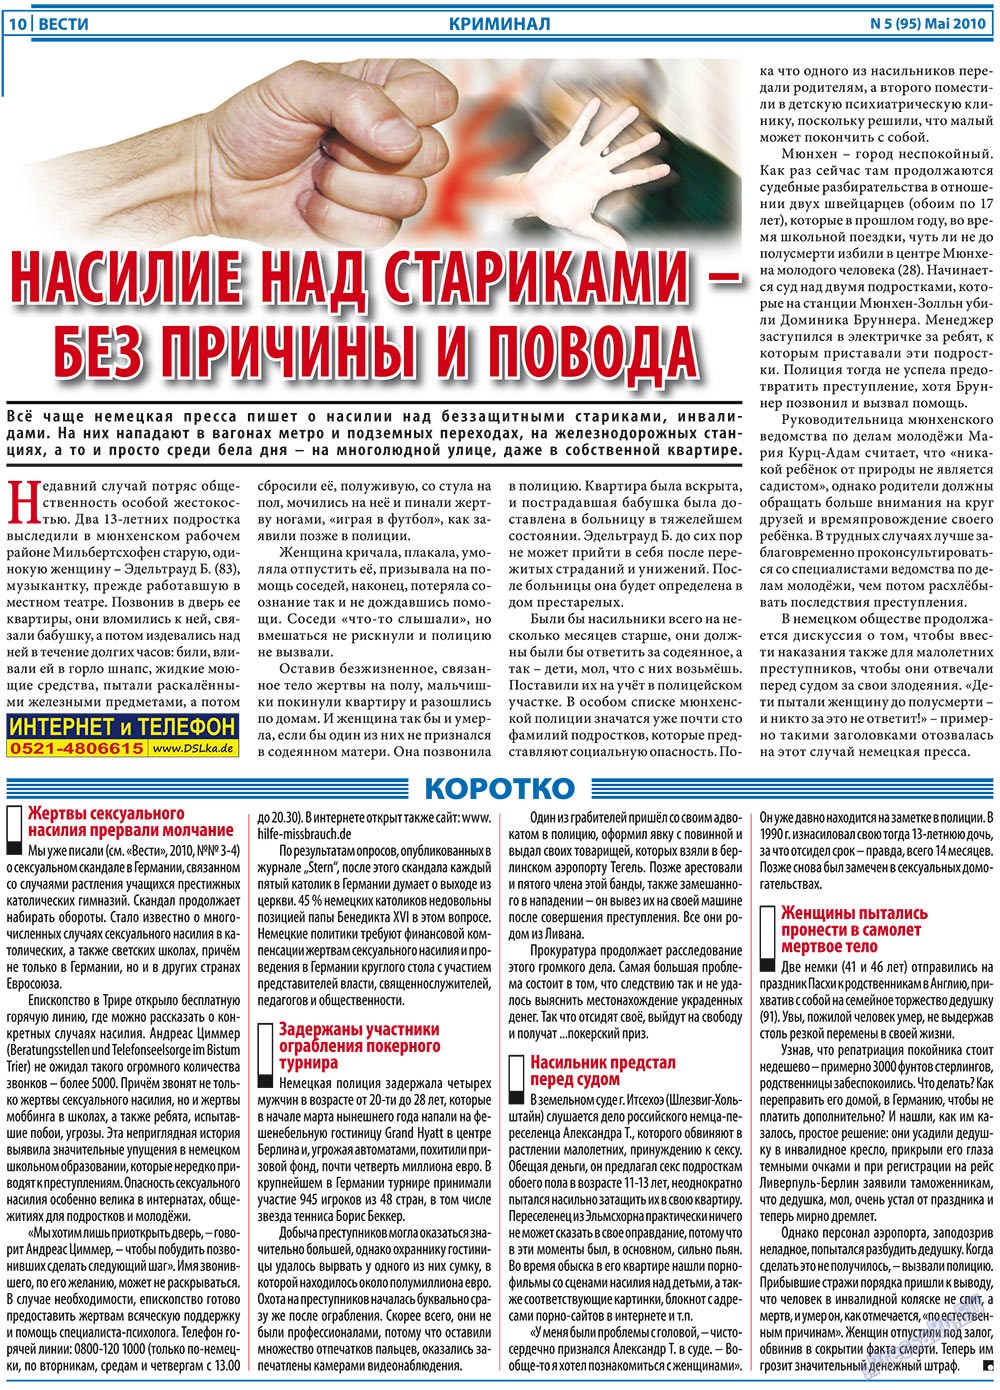 Вести, газета. 2010 №5 стр.10